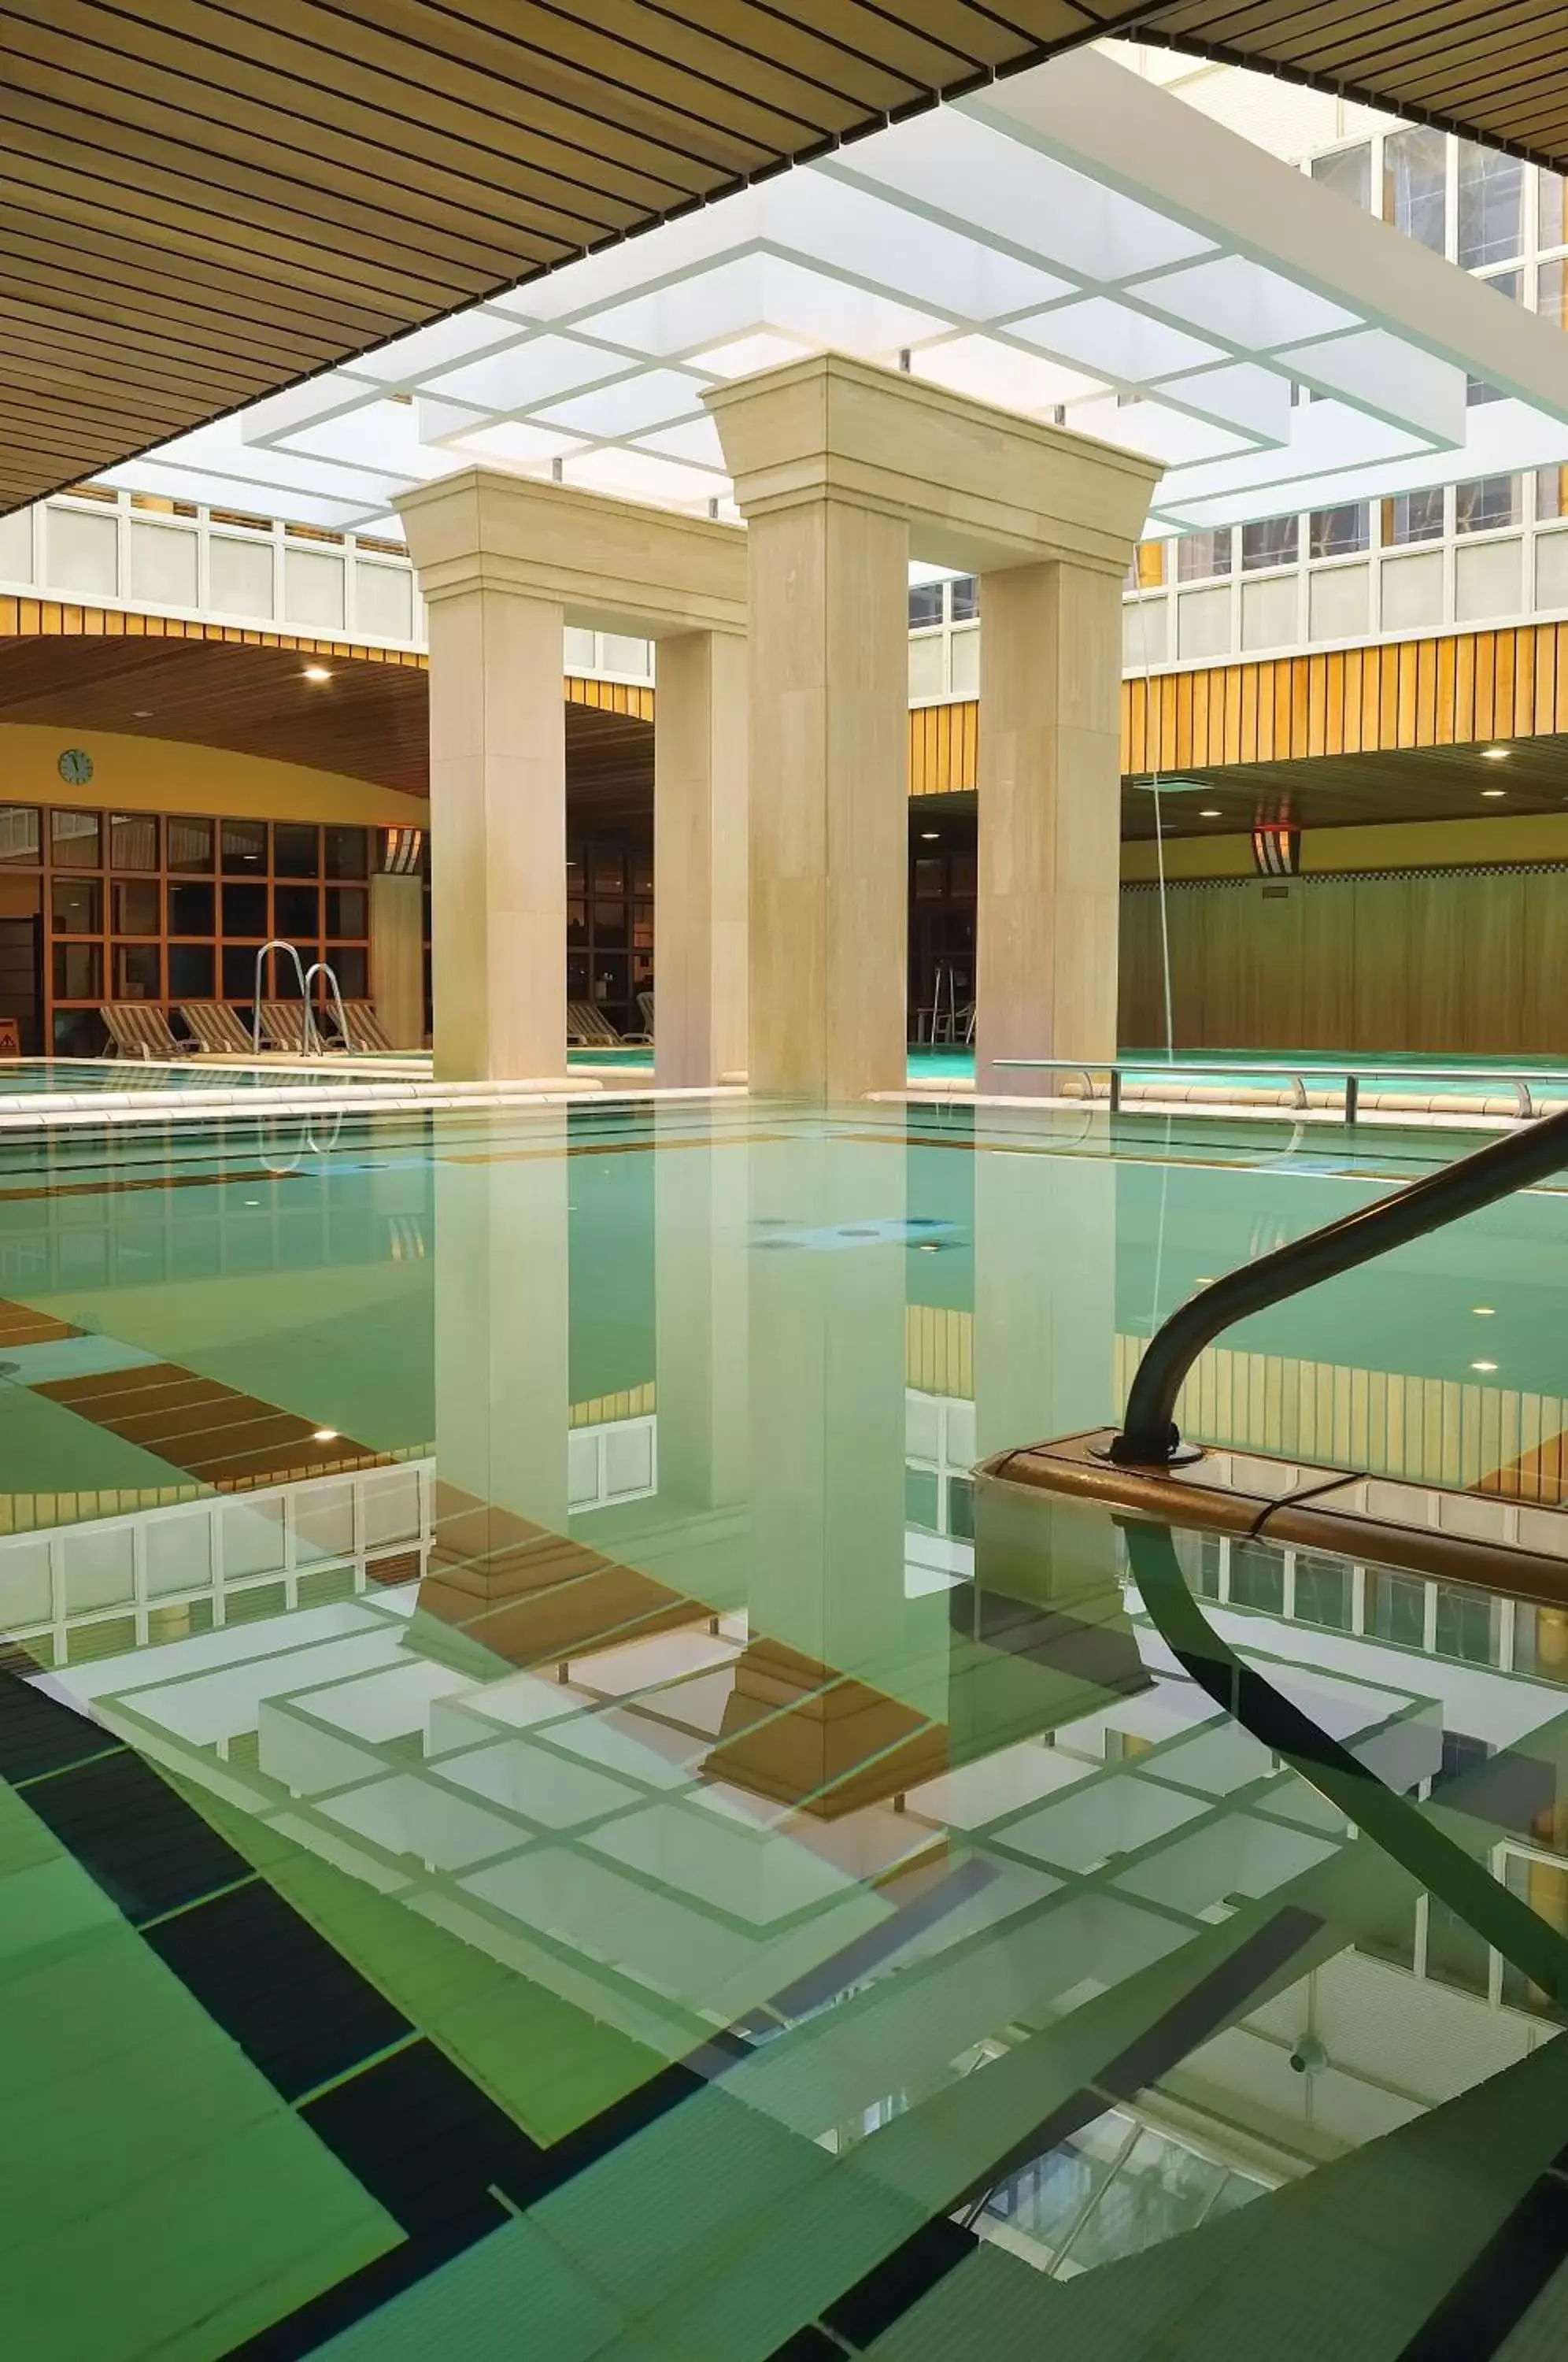 Swimming Pool in The Aquincum Hotel Budapest